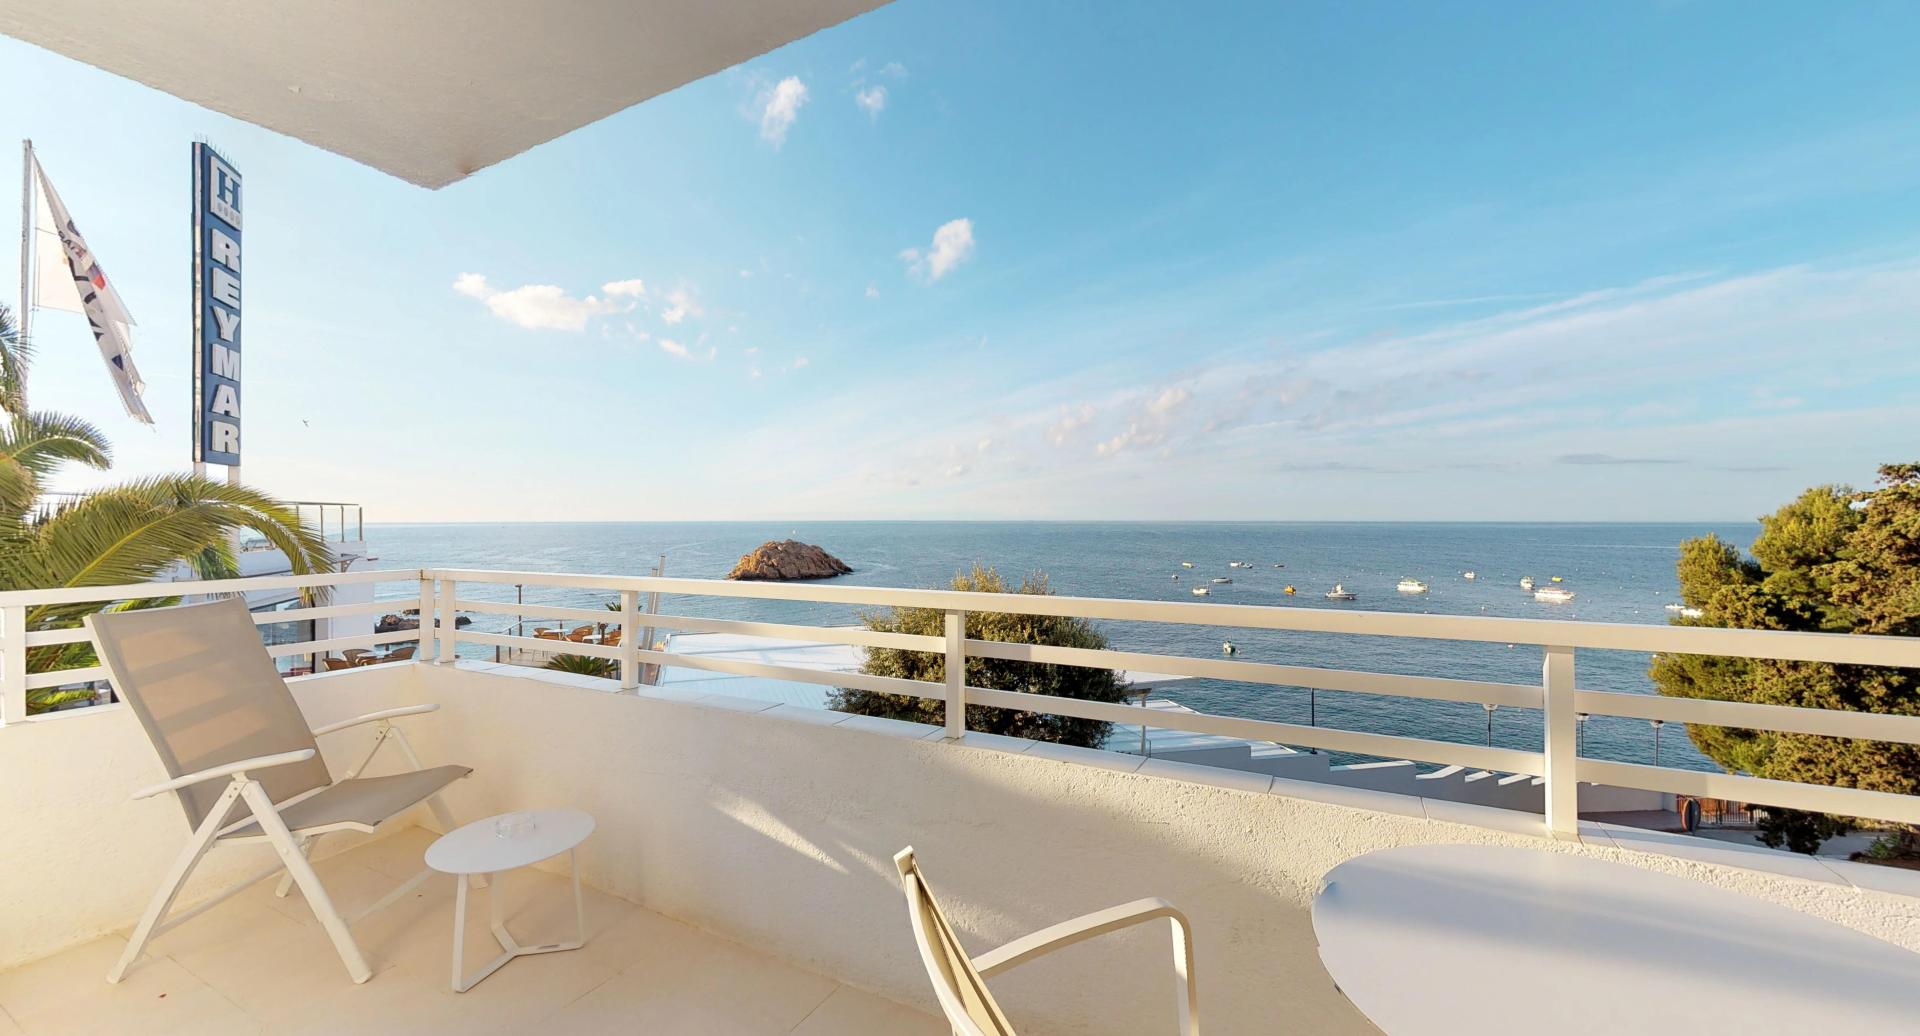 Profitez de vacances de luxe  sur la Costa Brava